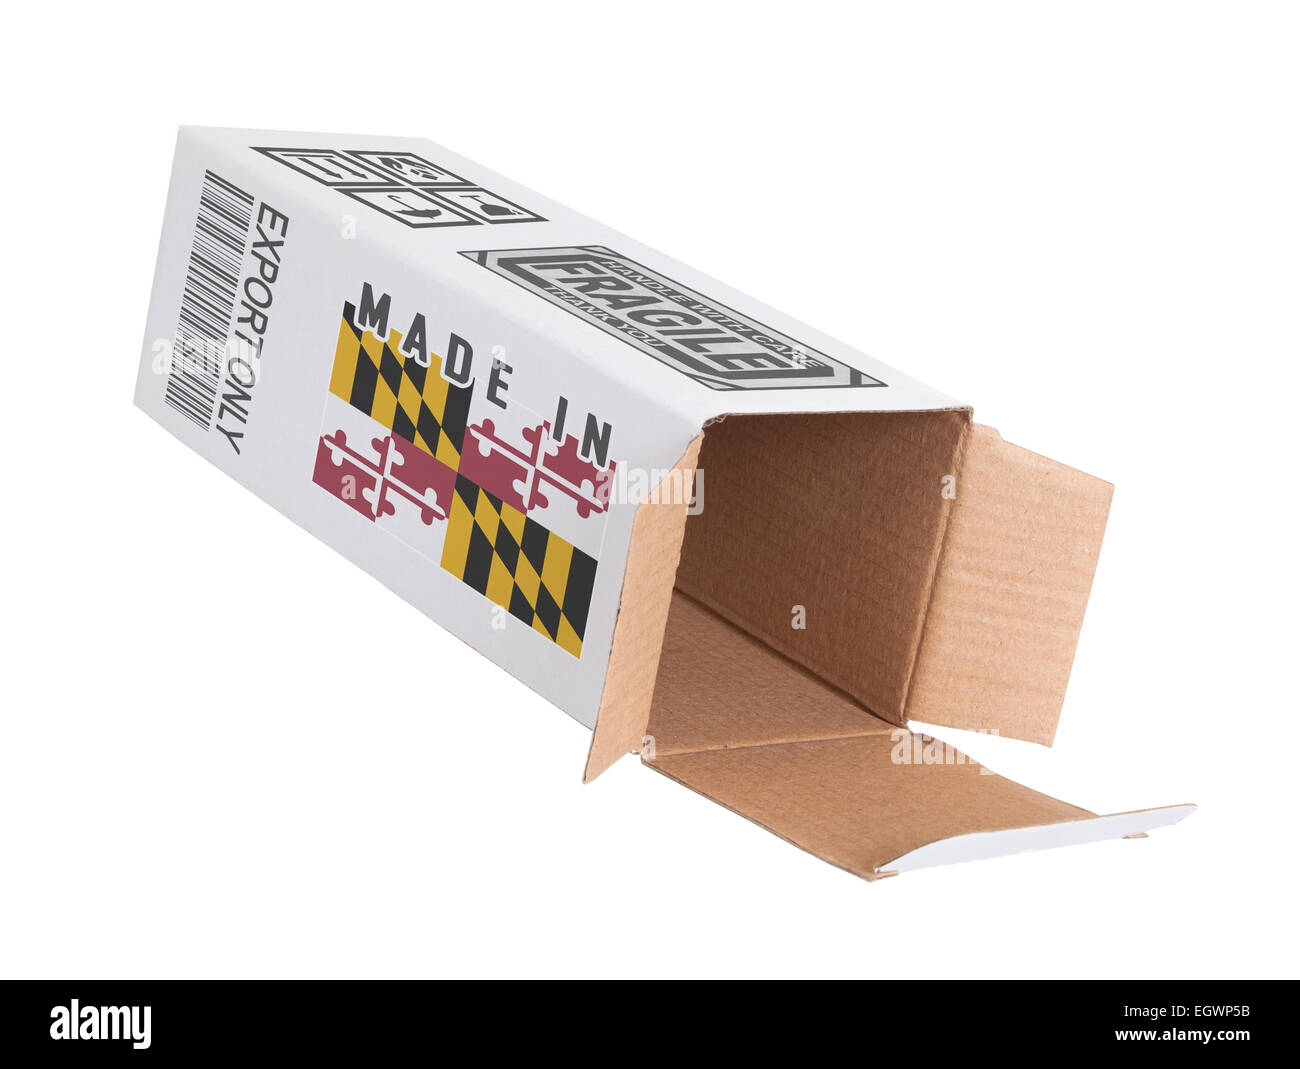 Concept de l'exportation, a ouvert la boîte de papier - Produit du Maryland Banque D'Images